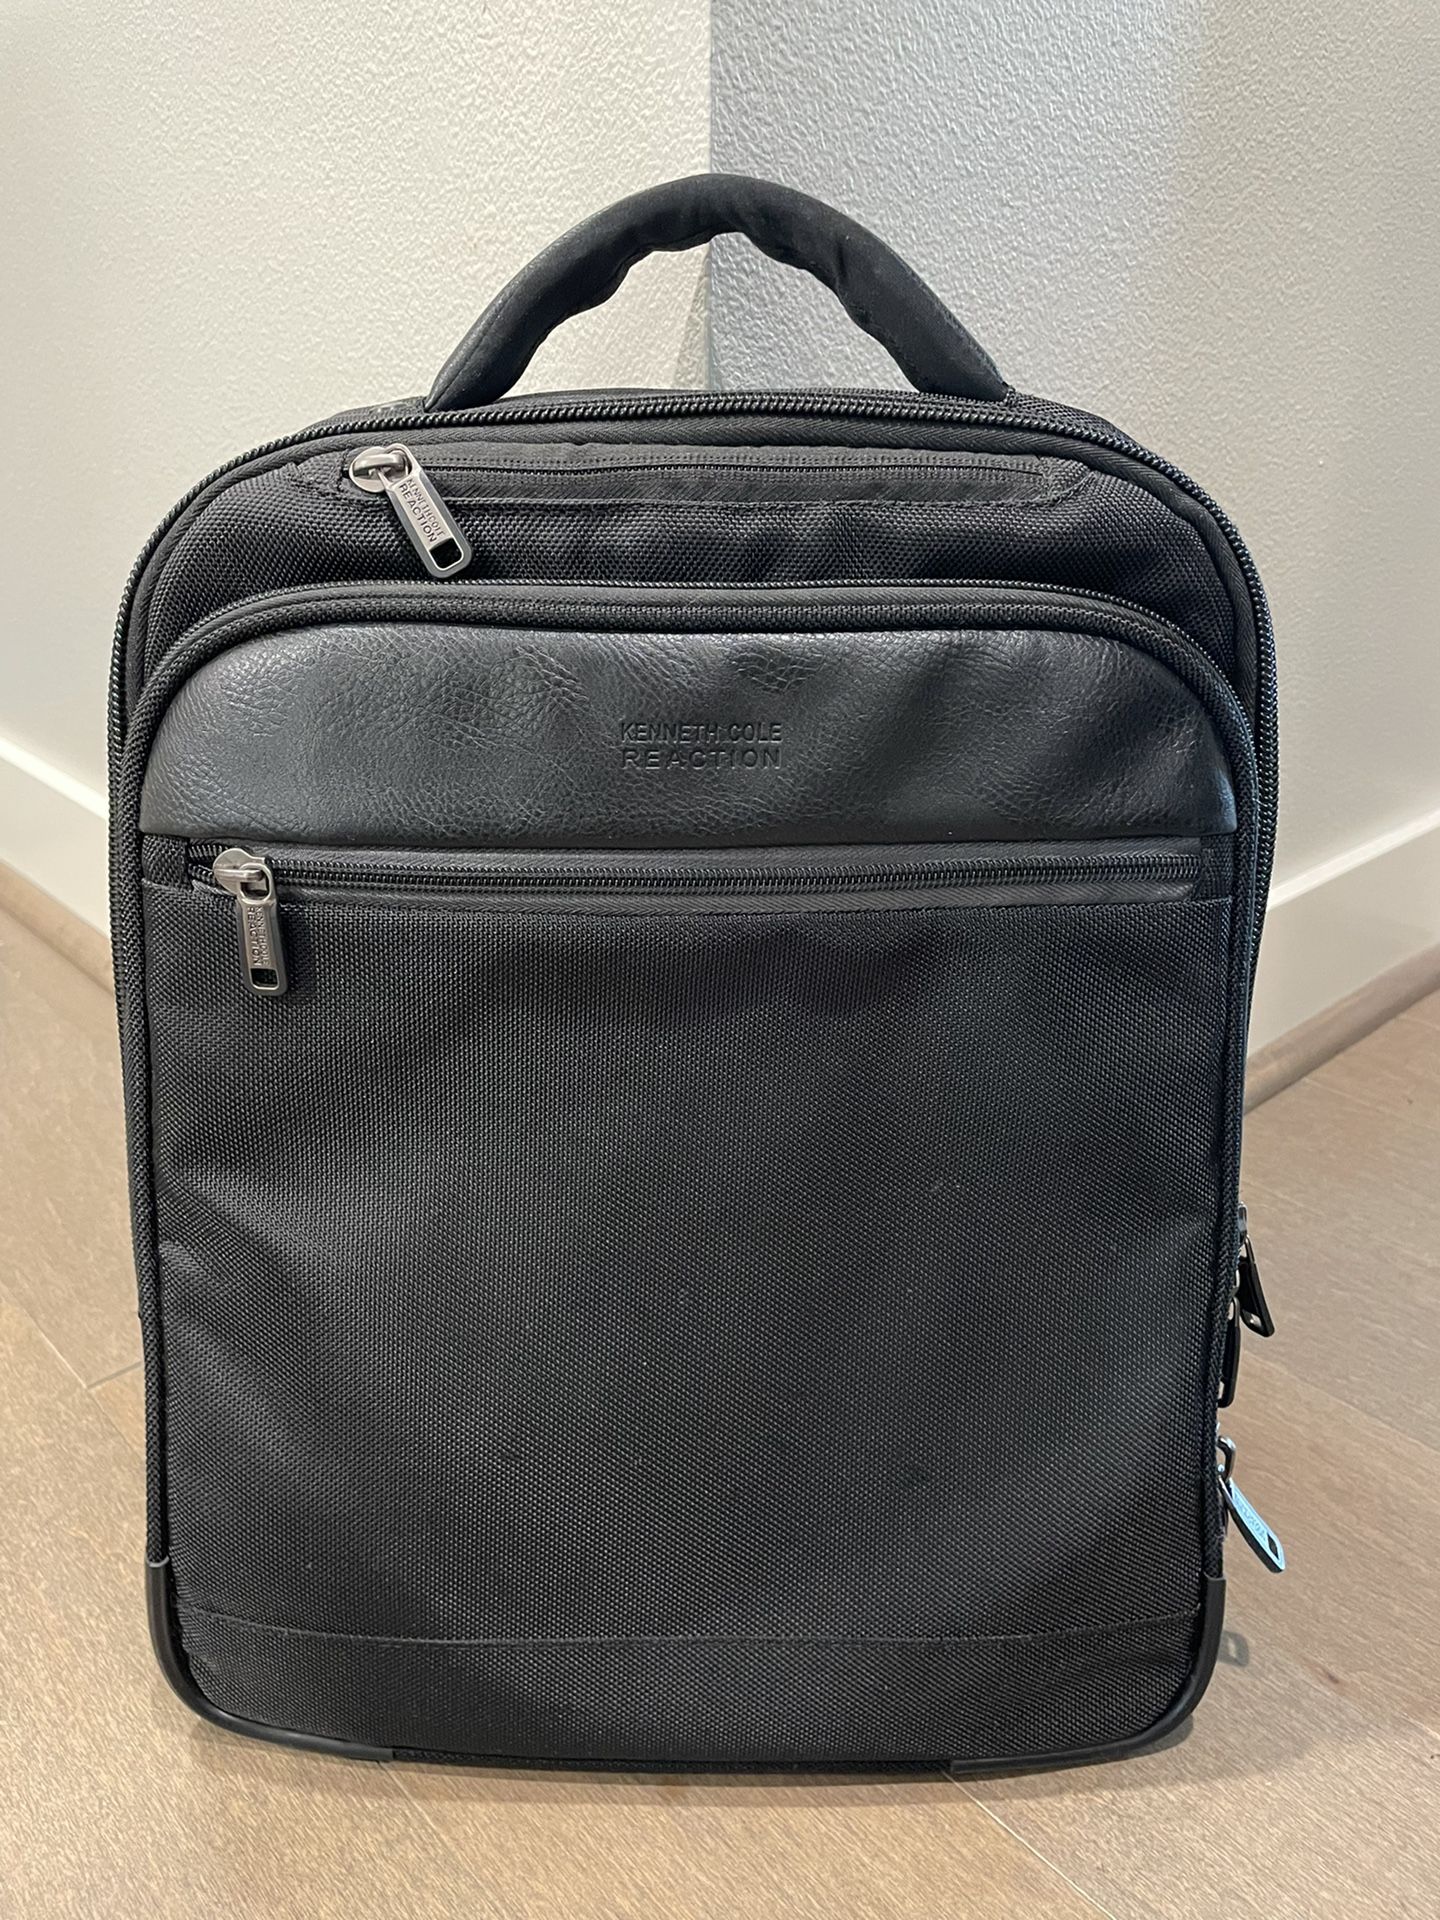 Kenneth Cole Laptop Backpack, black